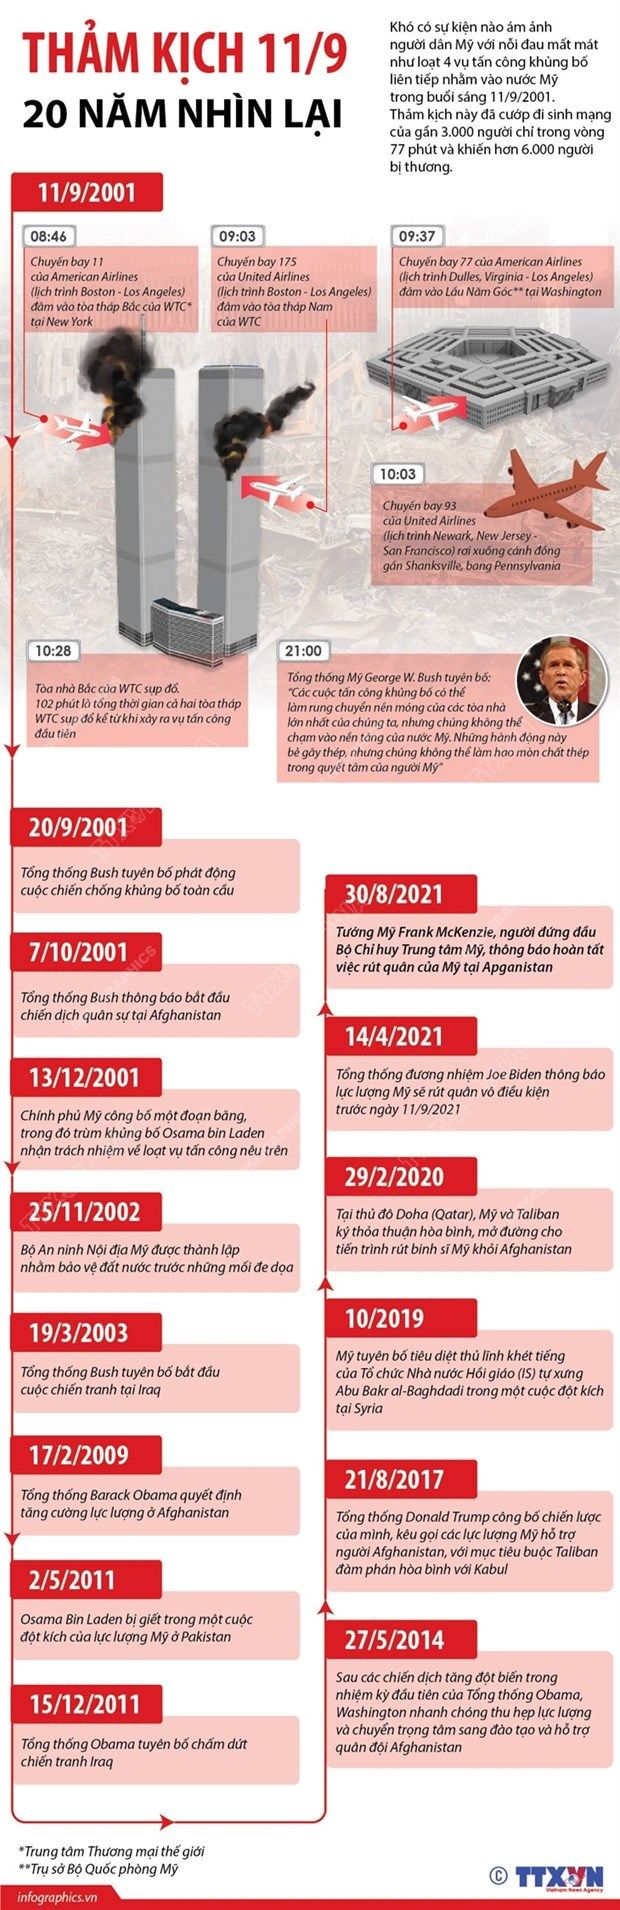 [Infographics] Nhìn lại thảm kịch 11/9 cách đây tròn 20 năm